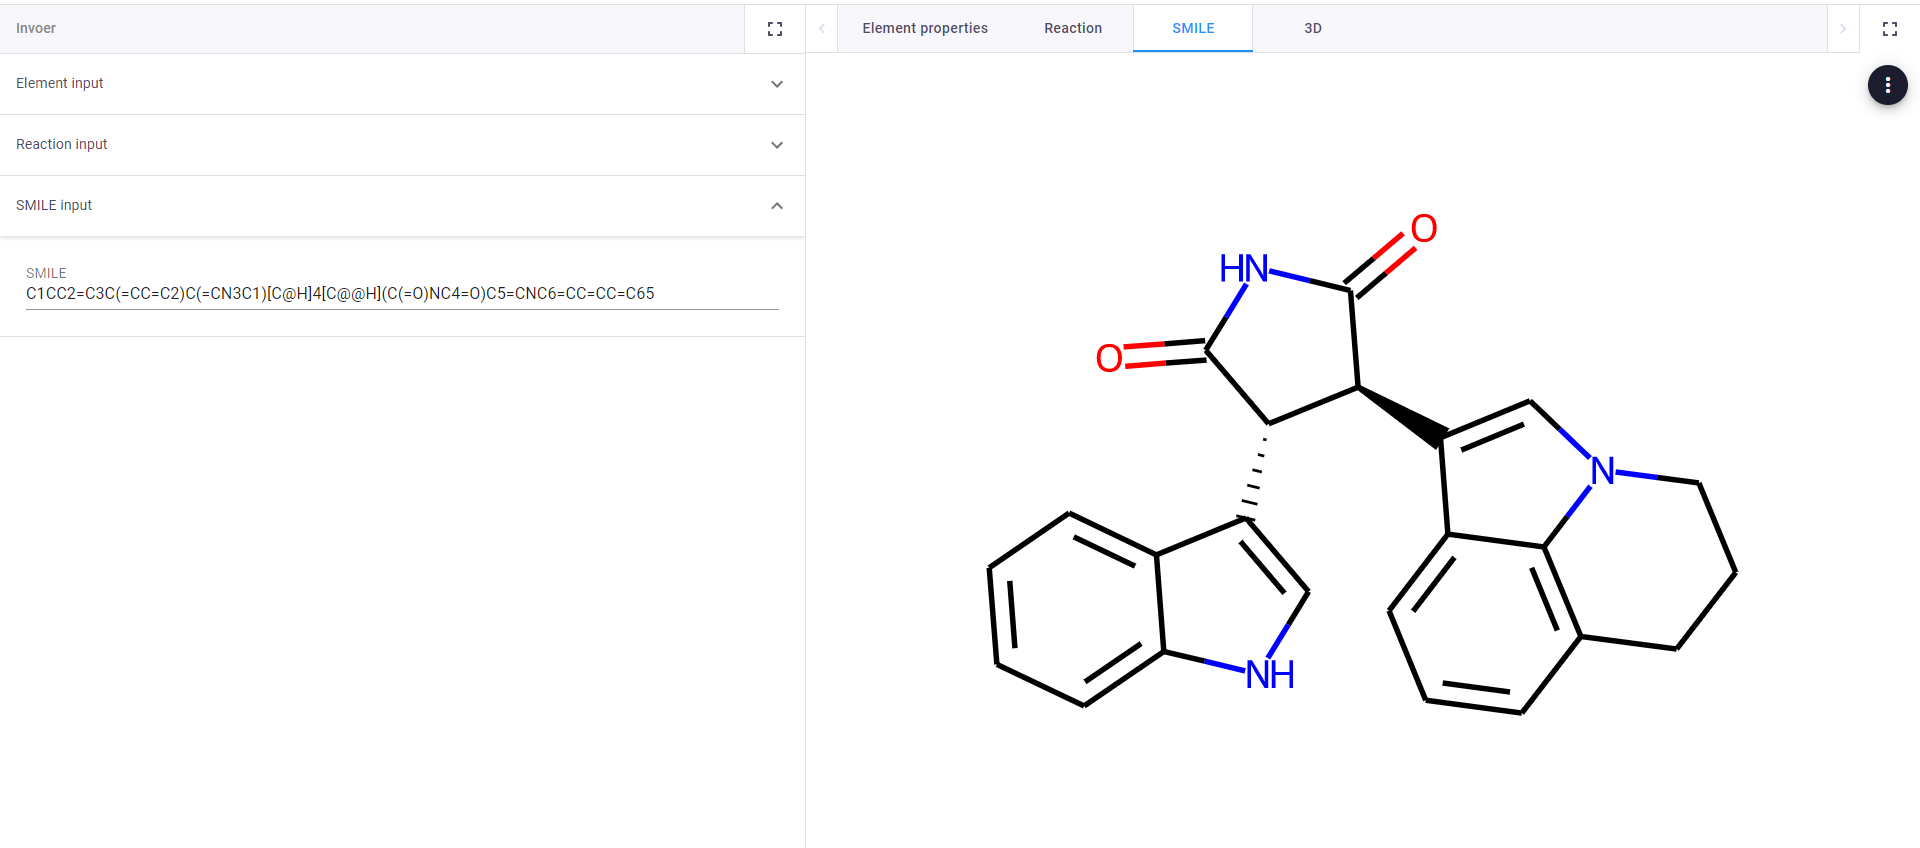 blog_sample_app_chemical_engineering_2